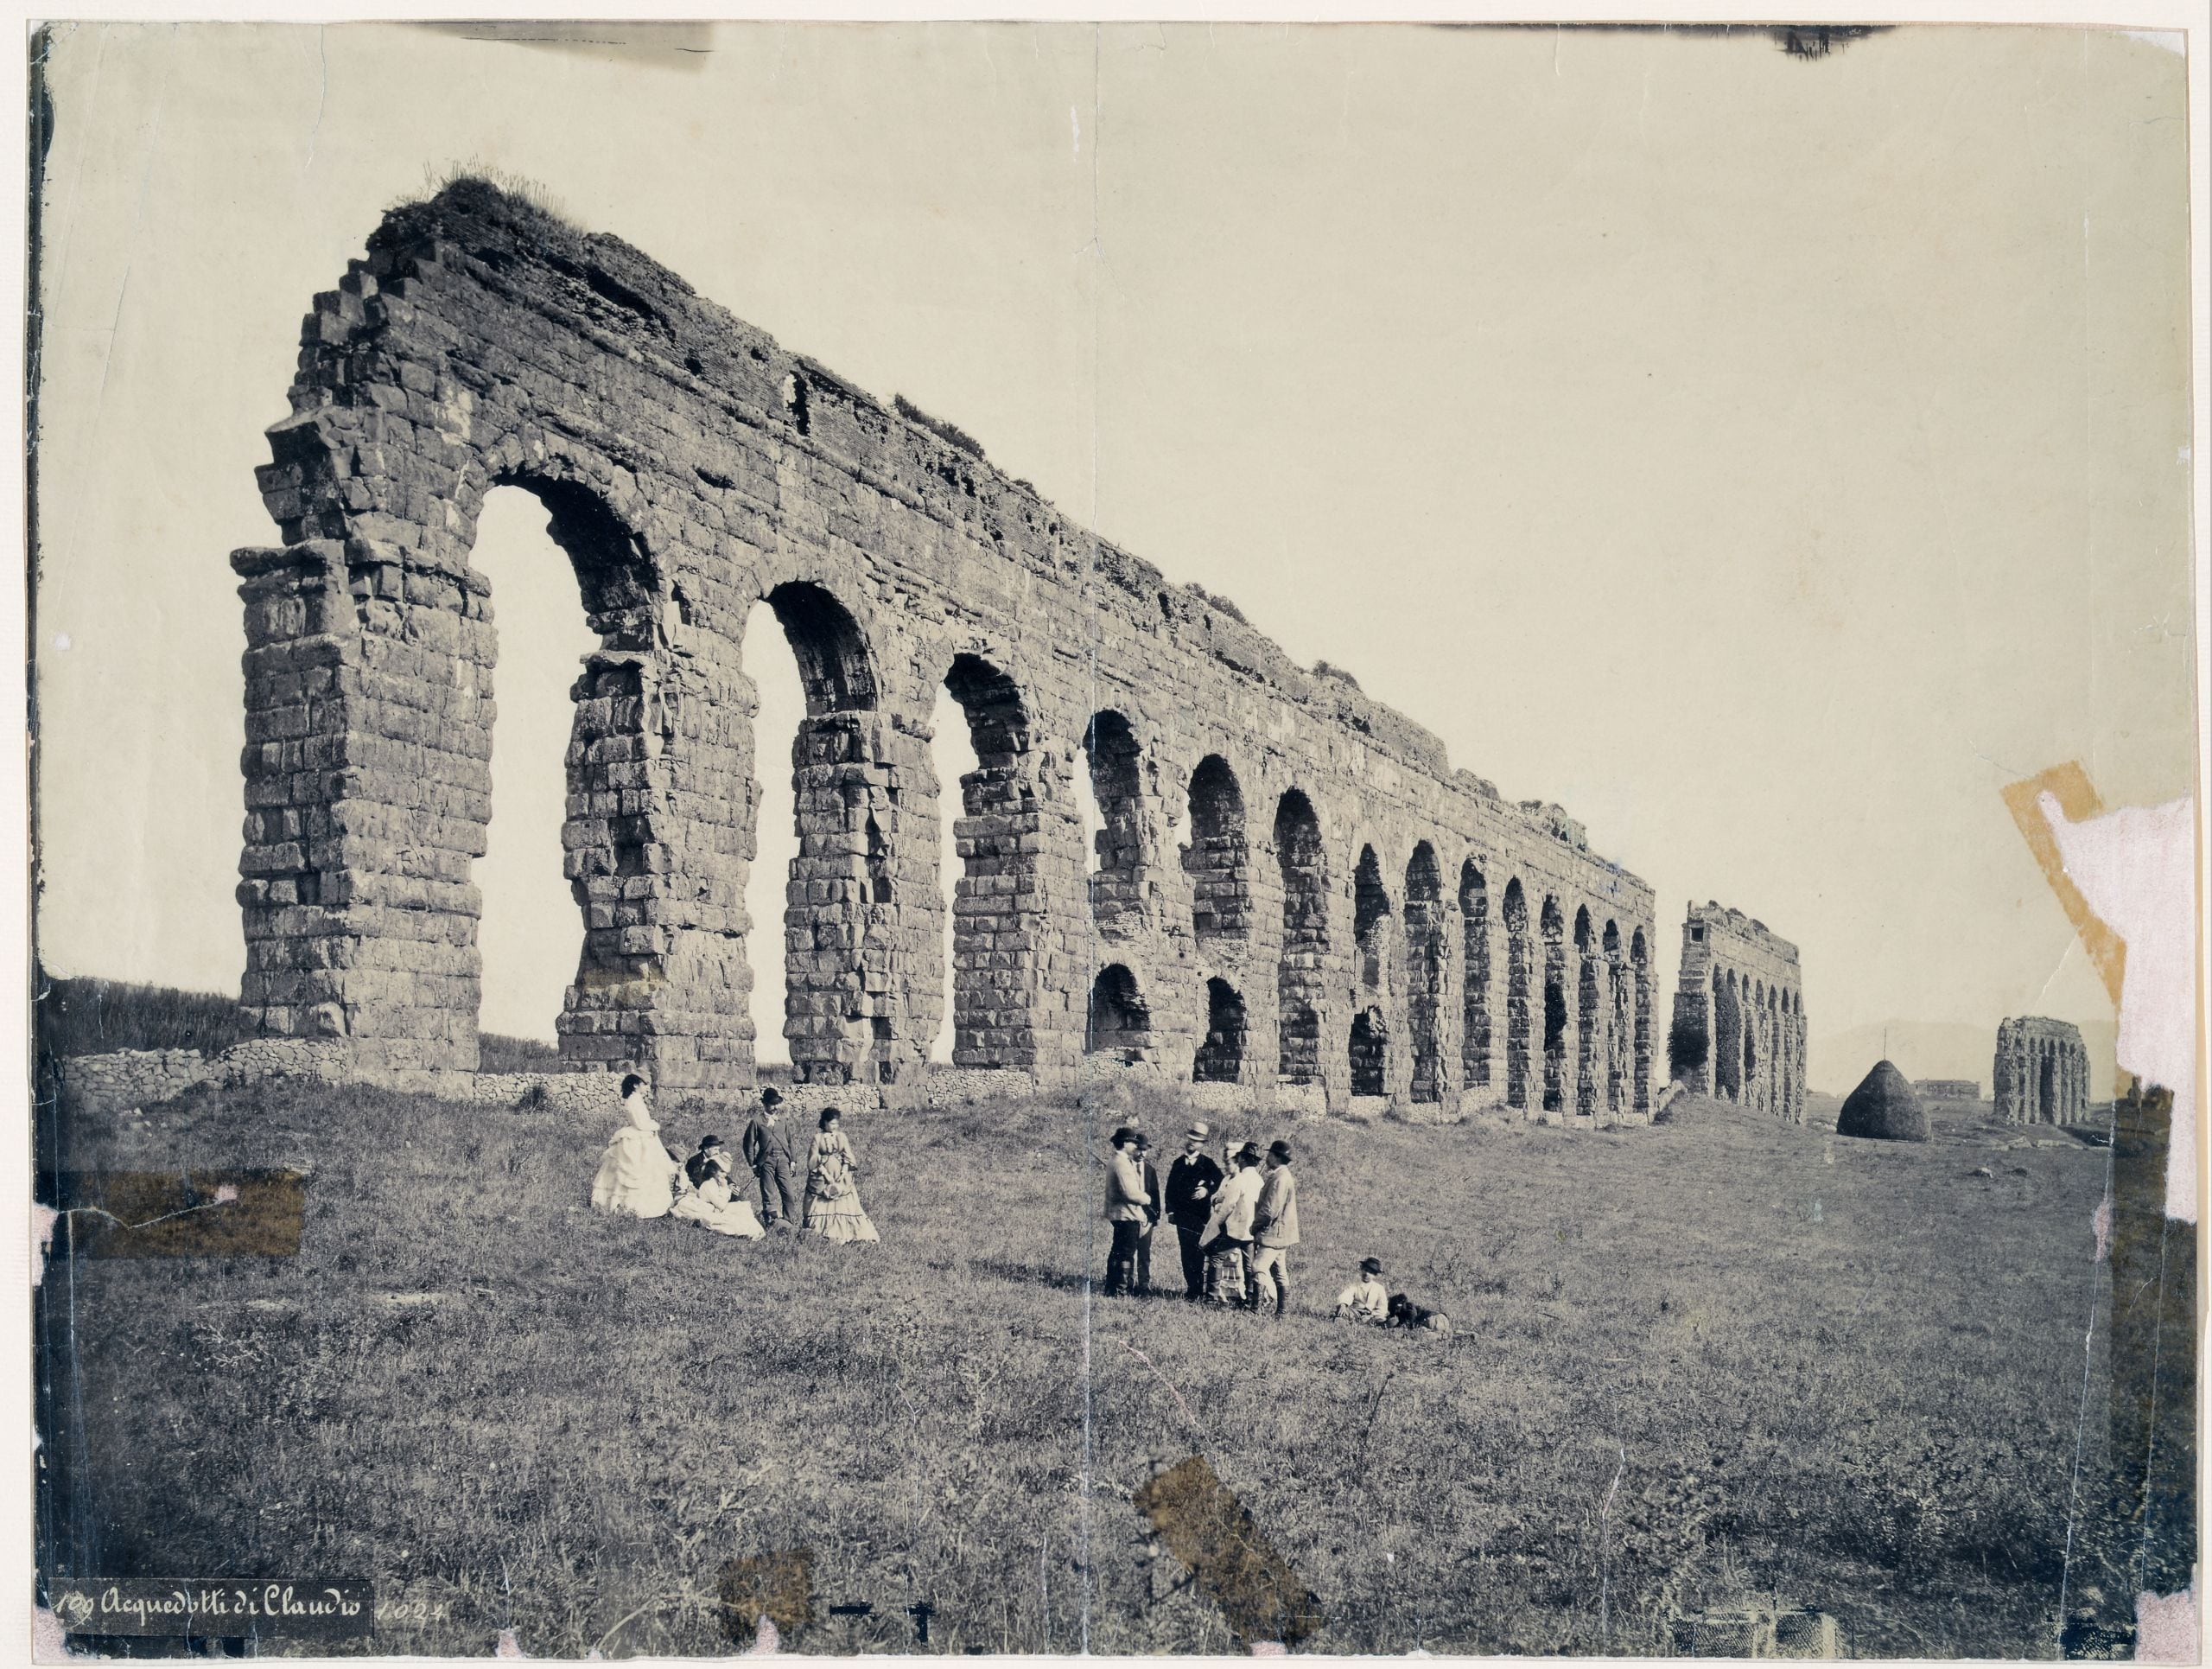 Rovine dell’acquedotto Claudio, 1868 ca. Pompeo Molins (1827-1900 ca.). Stampa all’albumina